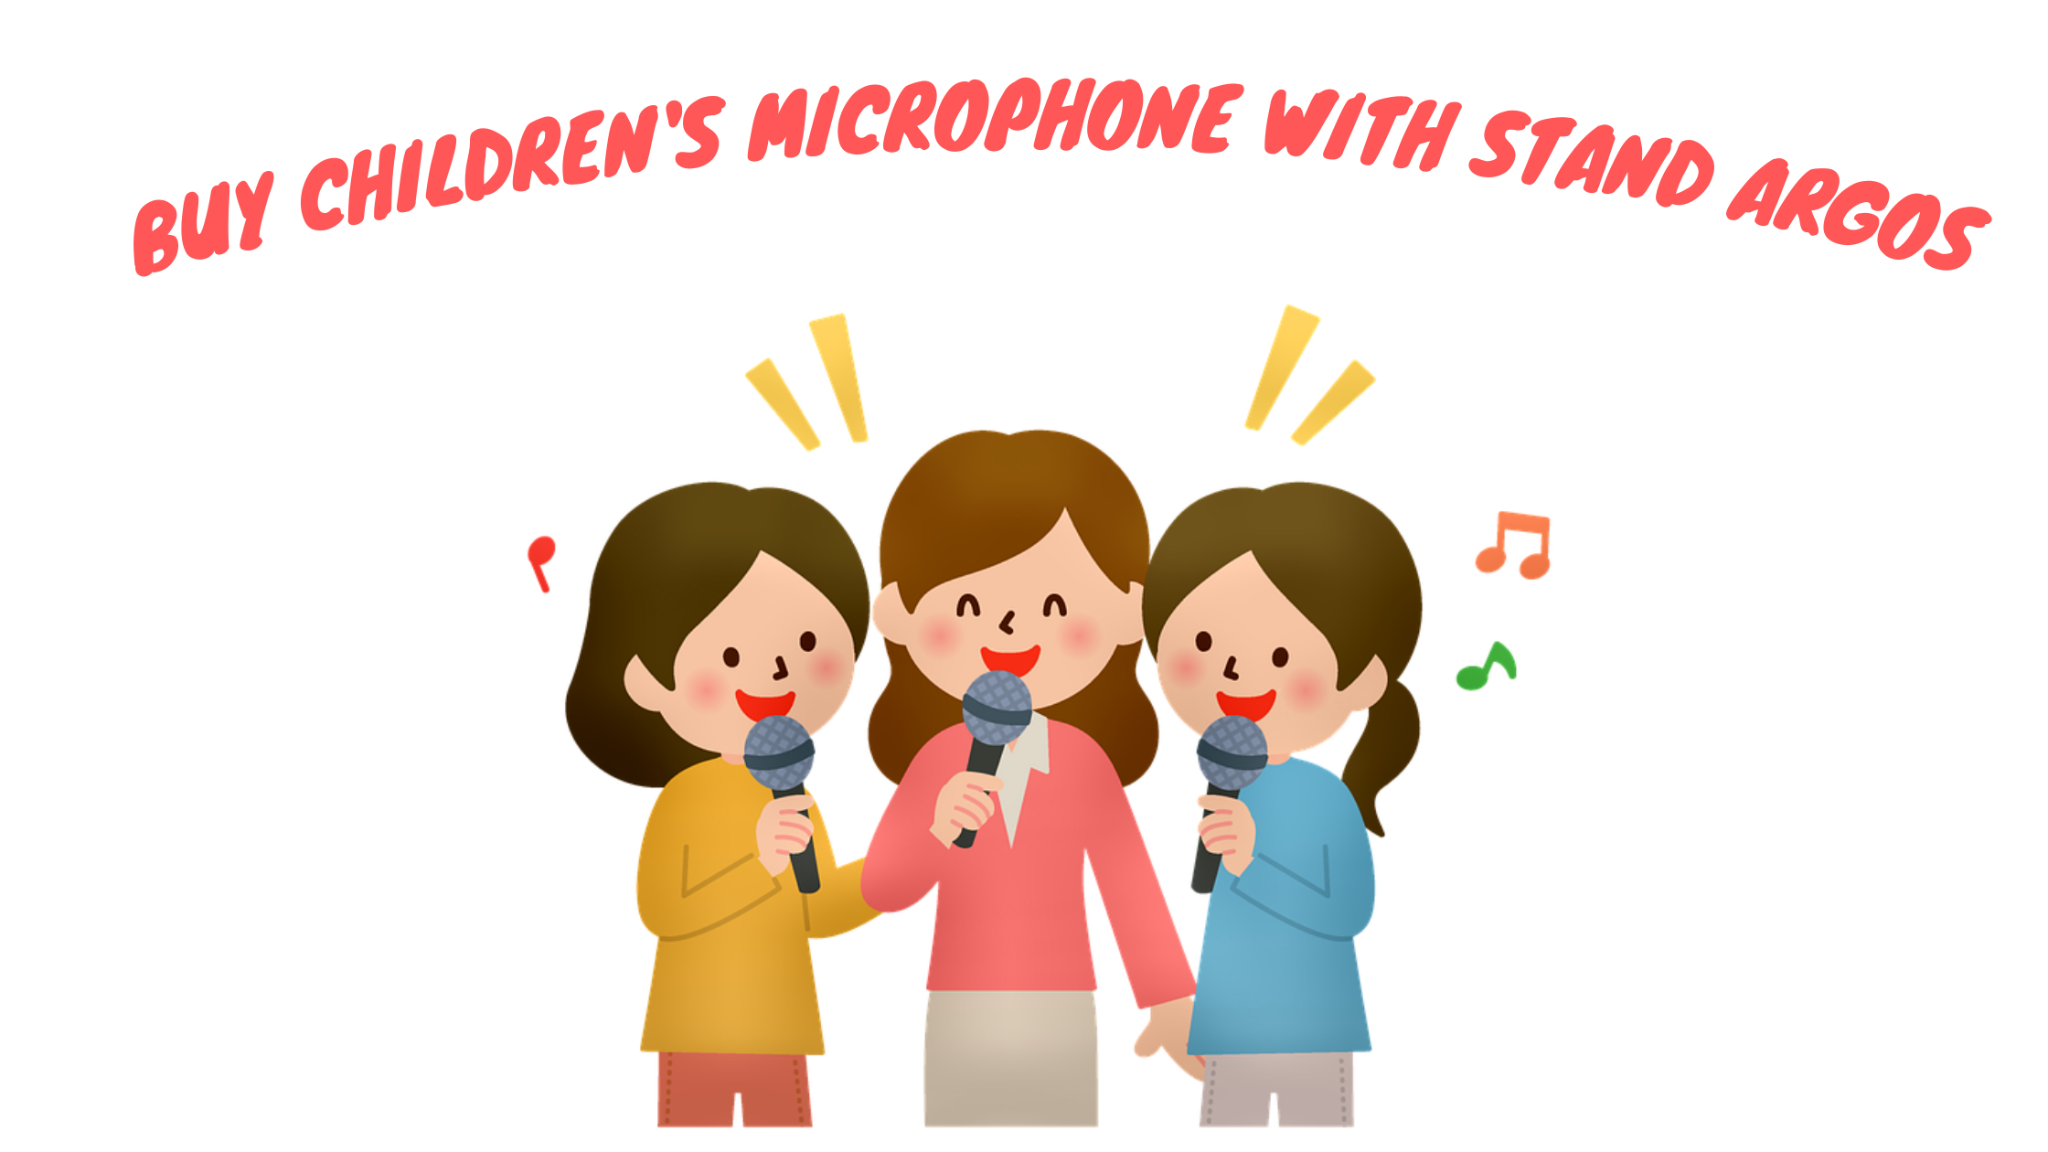 Acquista microfono per bambini con supporto Argos